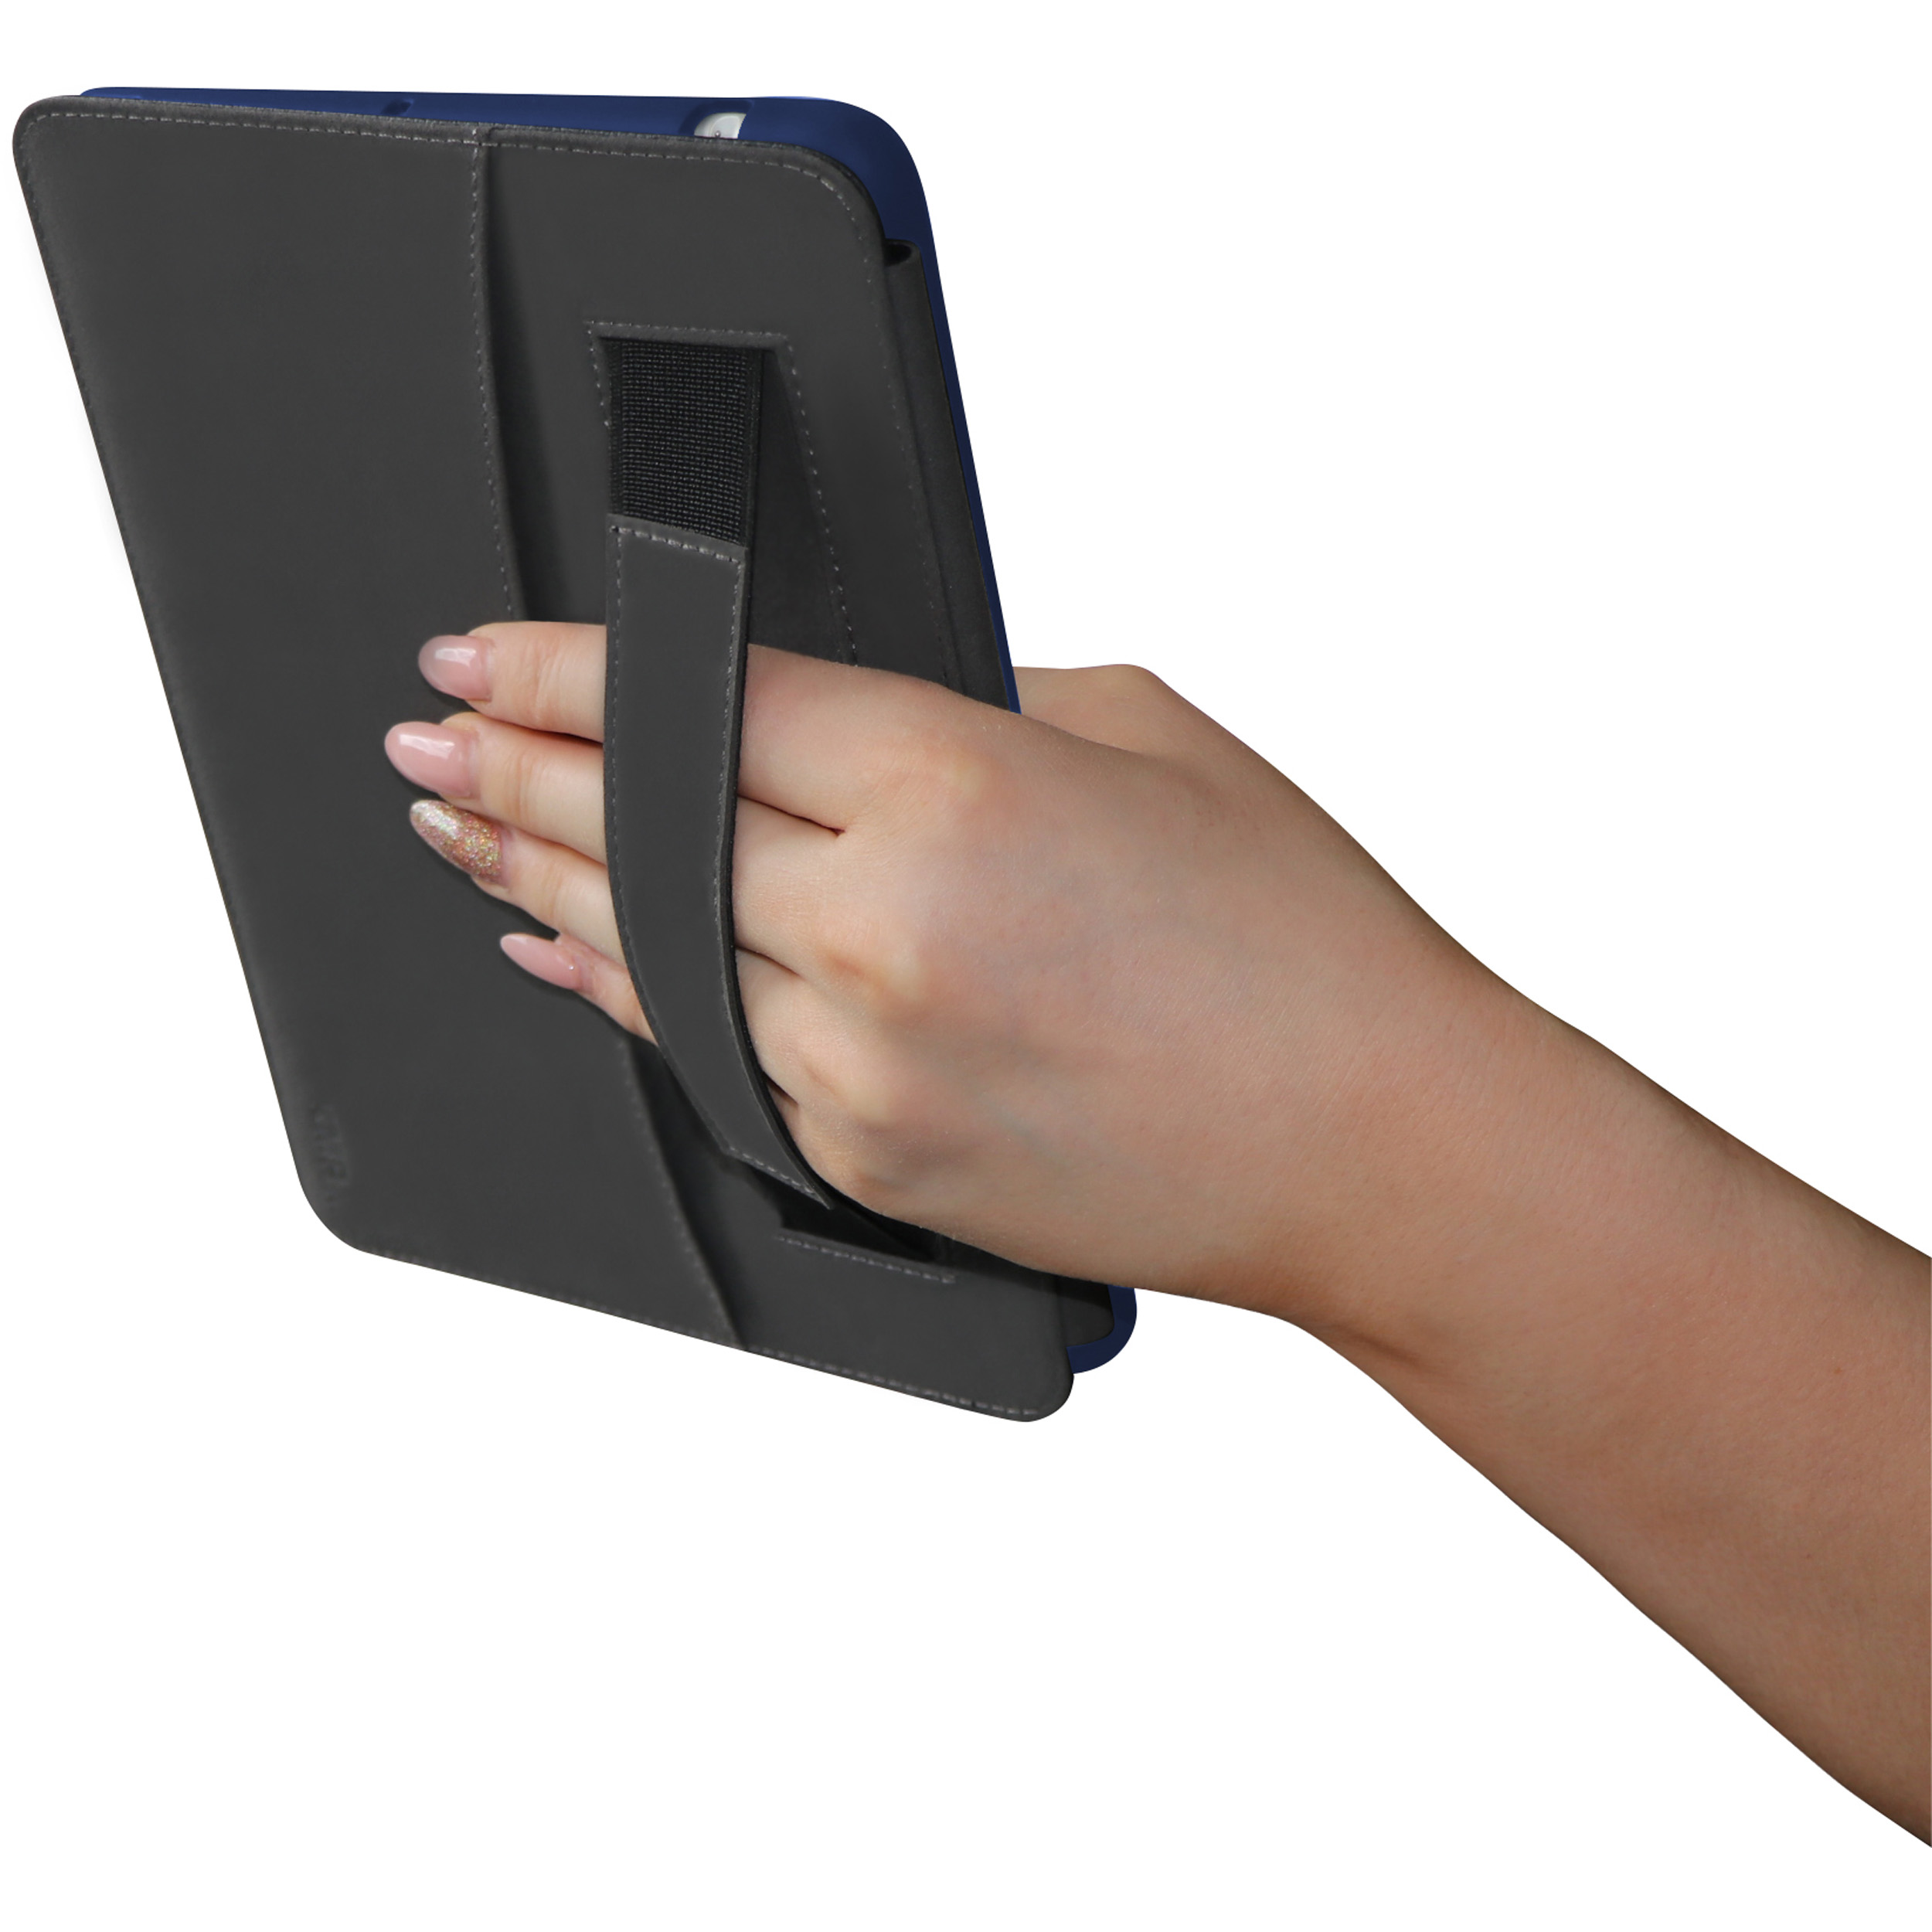 KMP Leder Mikrofaser, Apple - PU, Cover Mini Faux blue Full Blue 5 case PC, Protective Leder iPad Bookcase für für